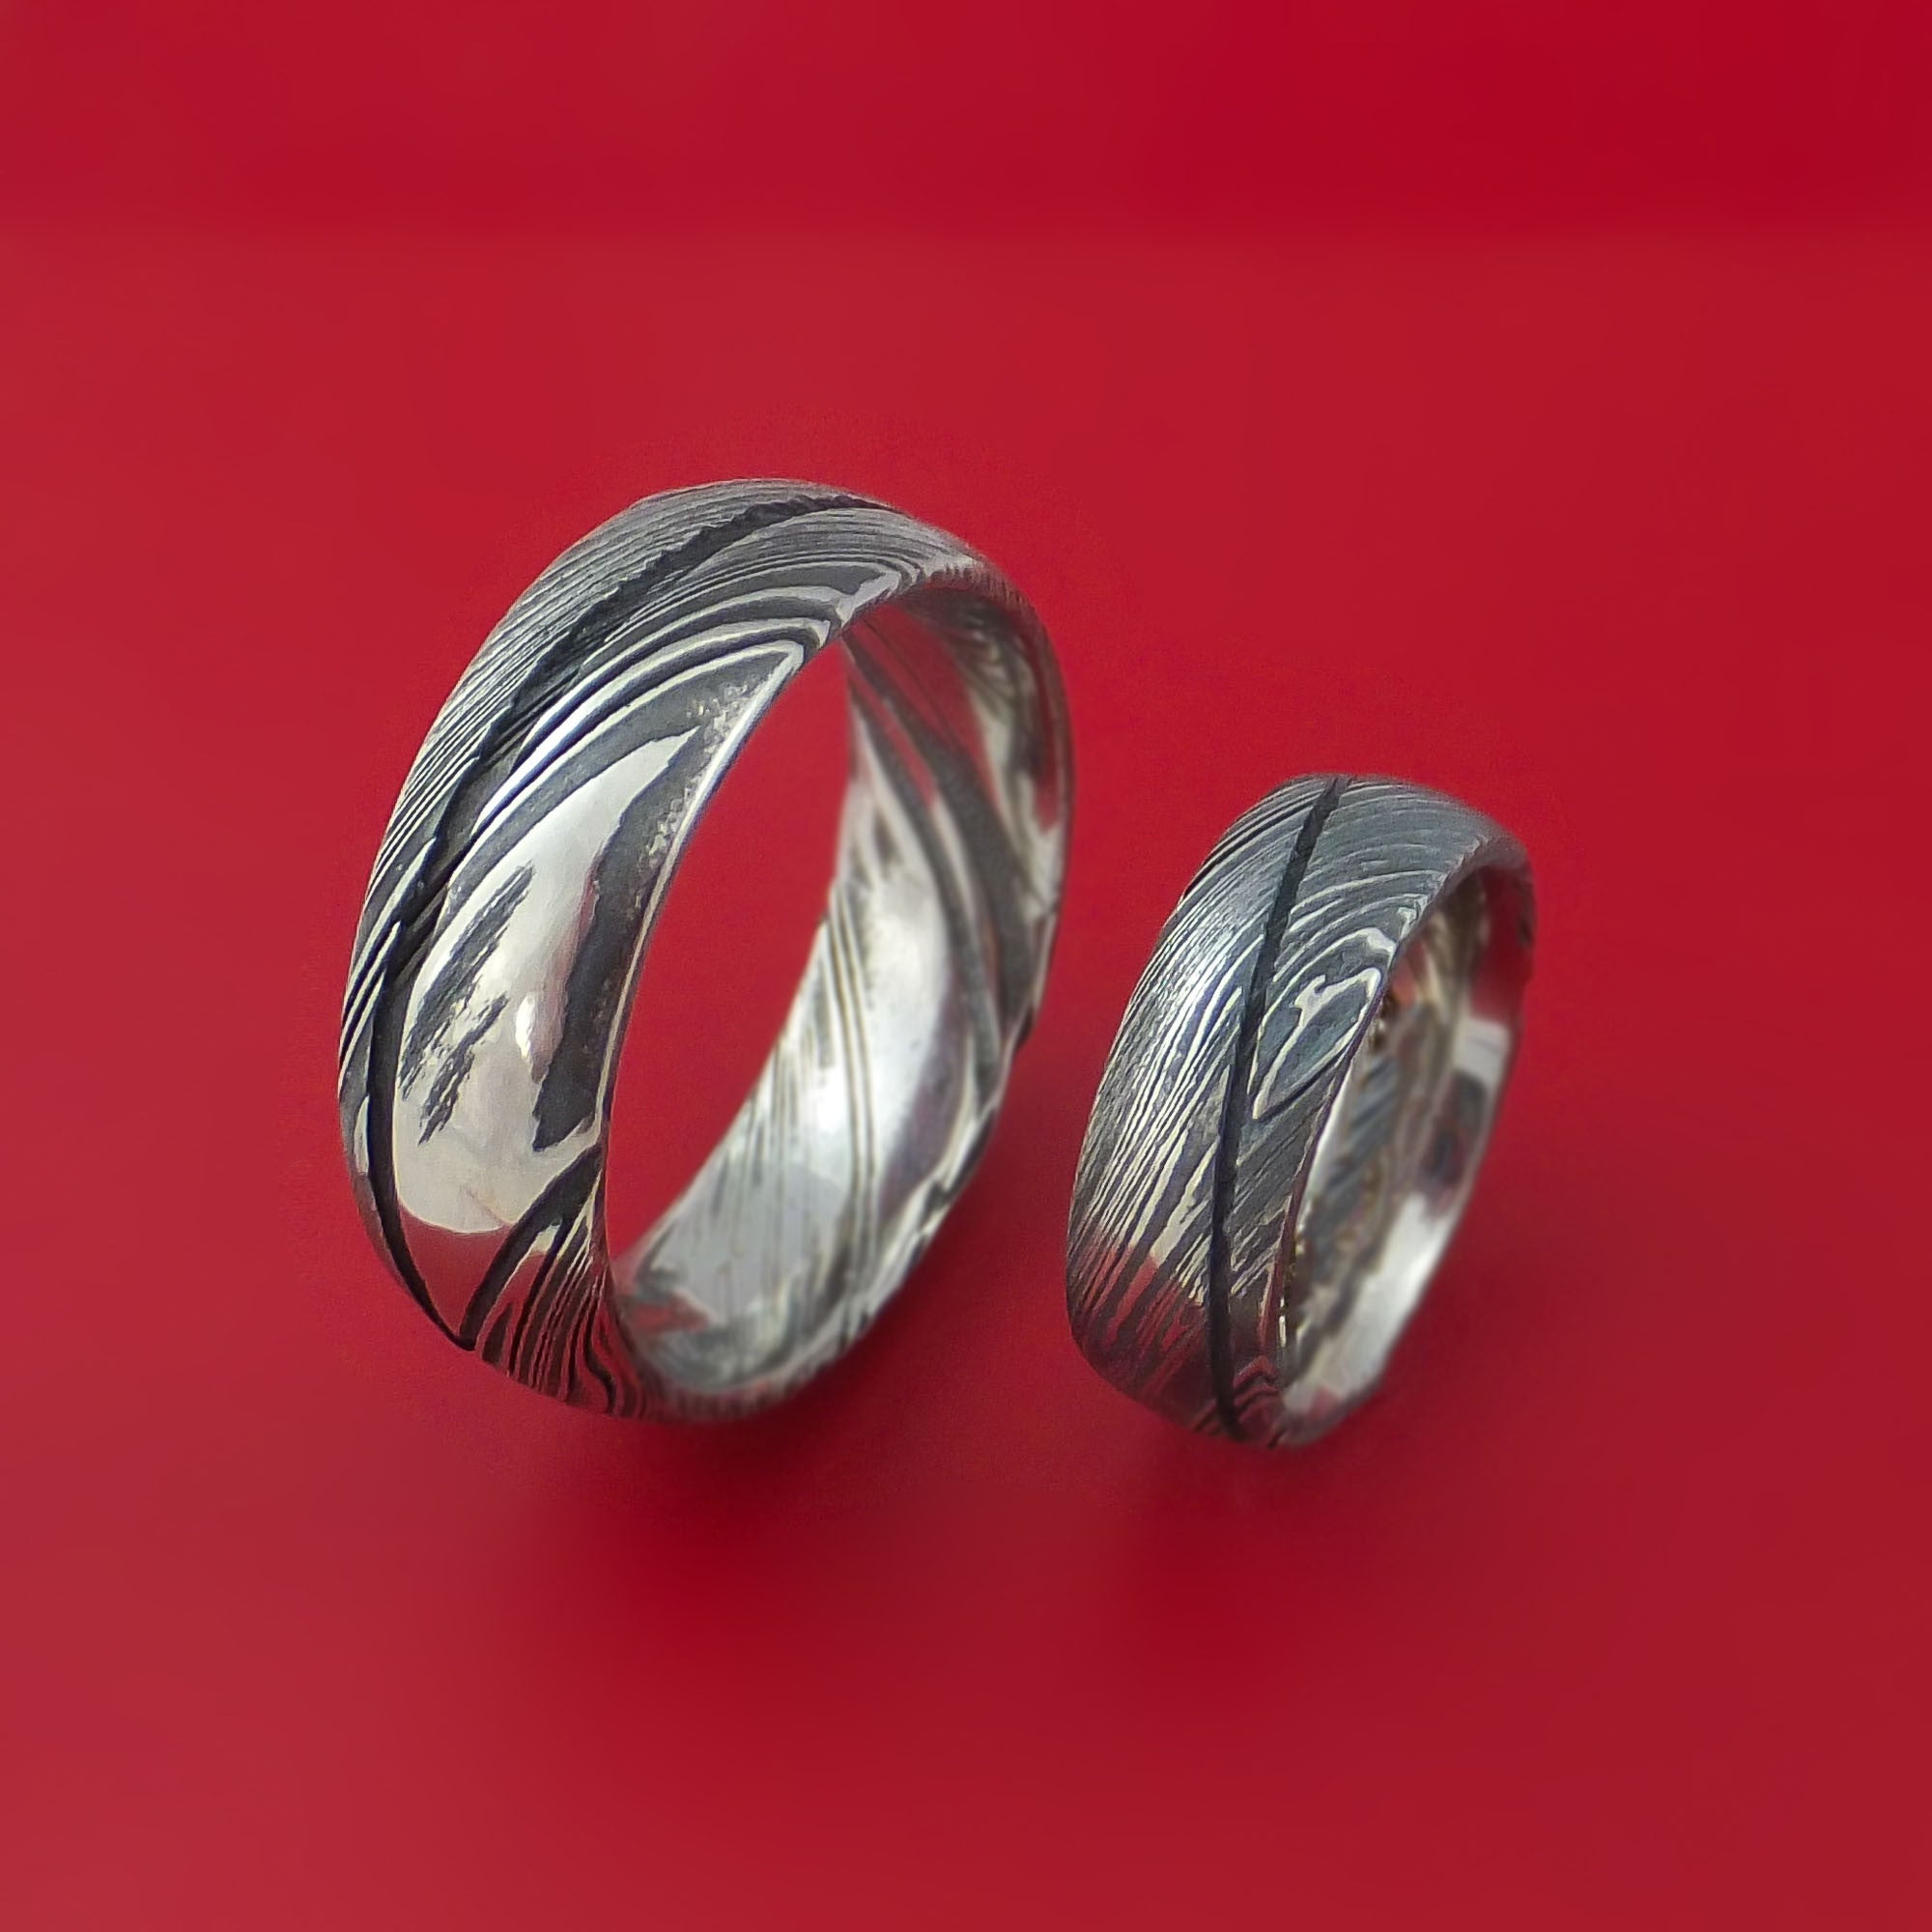 Matching Kuro Damascus Steel Ring Set Wedding Bands